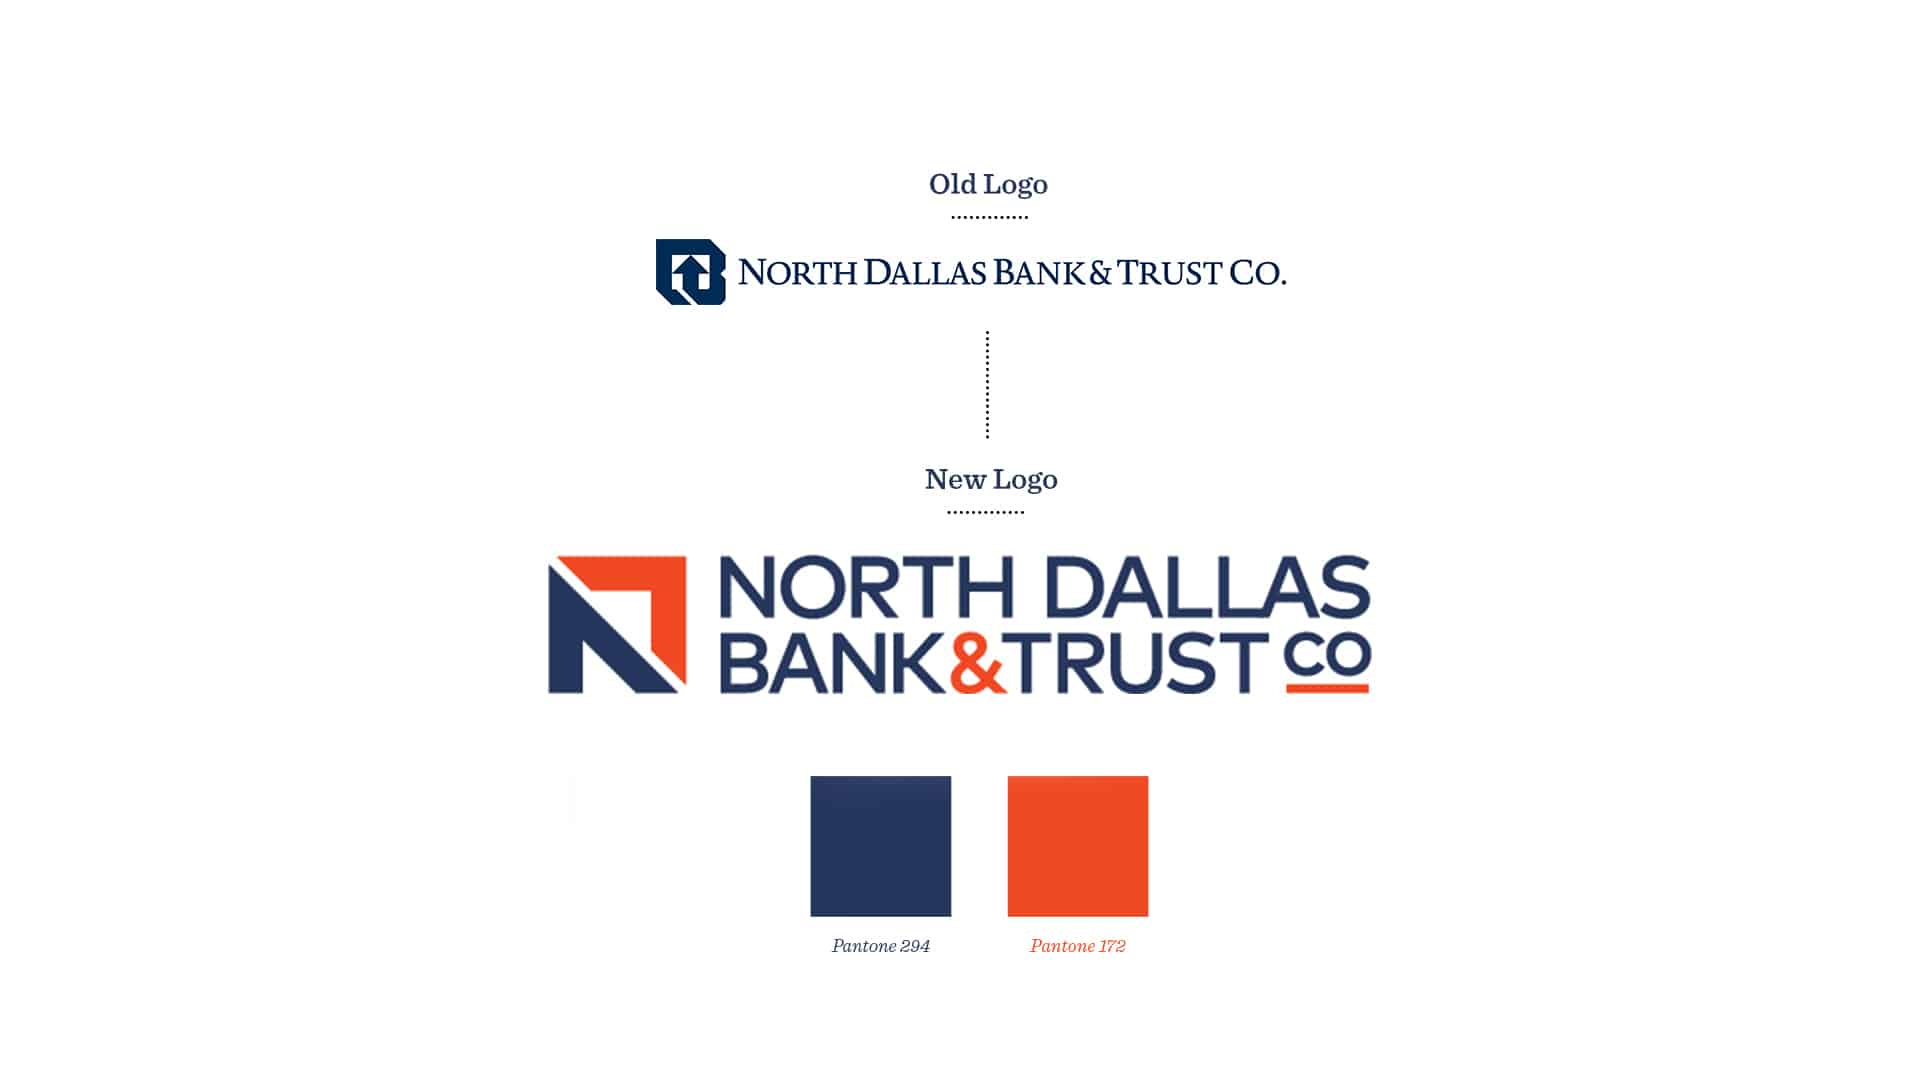 North Dallas Bank & Trust